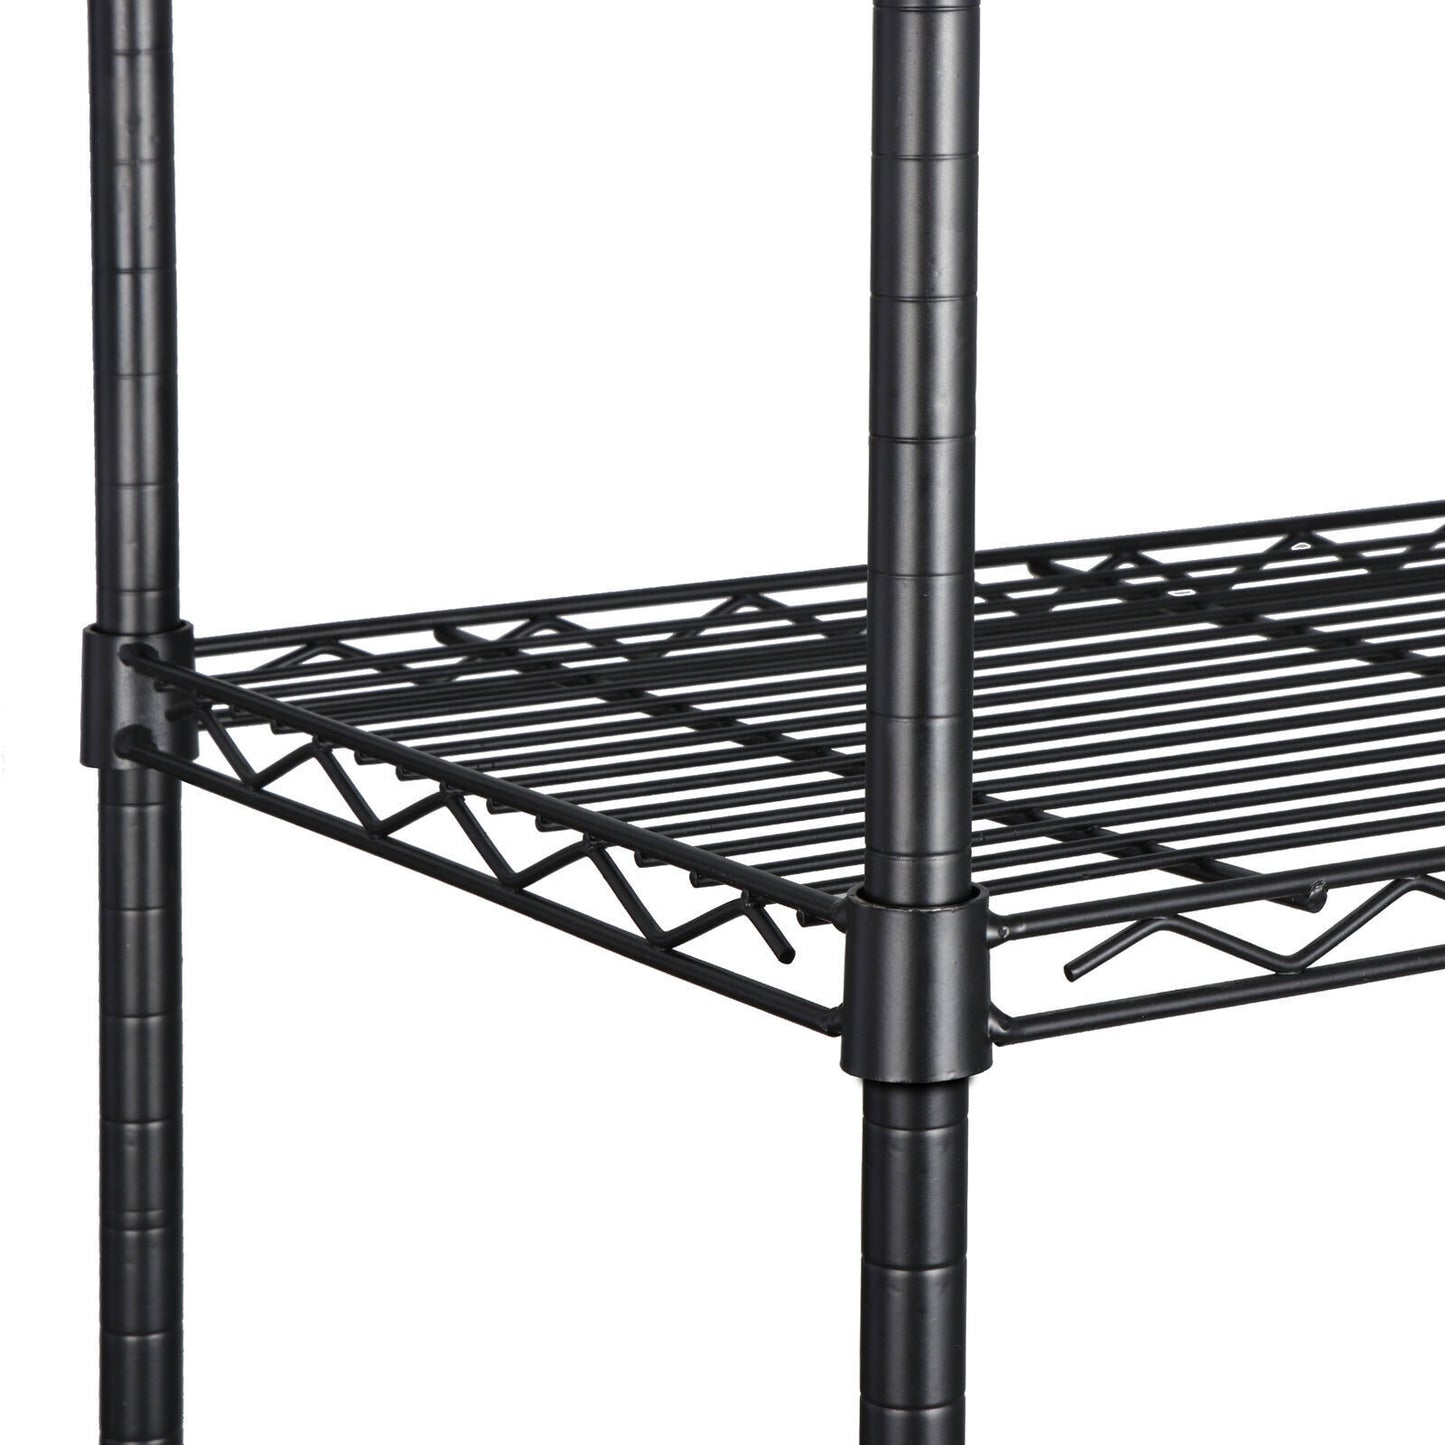 4-Tier Metal Wire Shelf Rack Storage Shelving Organization for Kitchen Garage